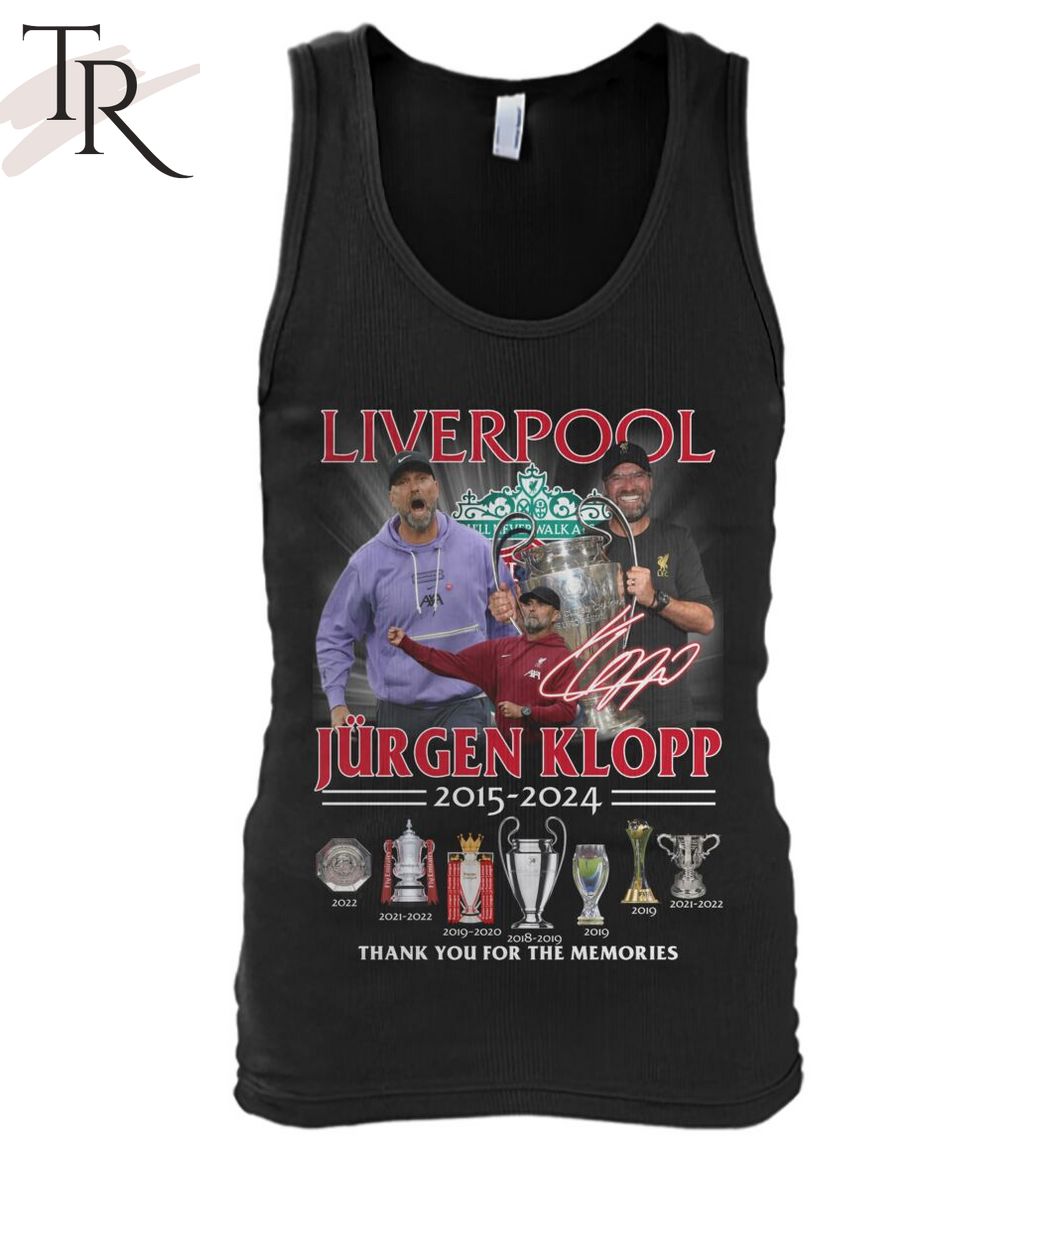 Liverpool Jurgen Klopp 2015 - 2024 Thank You For The Memories T-Shirt